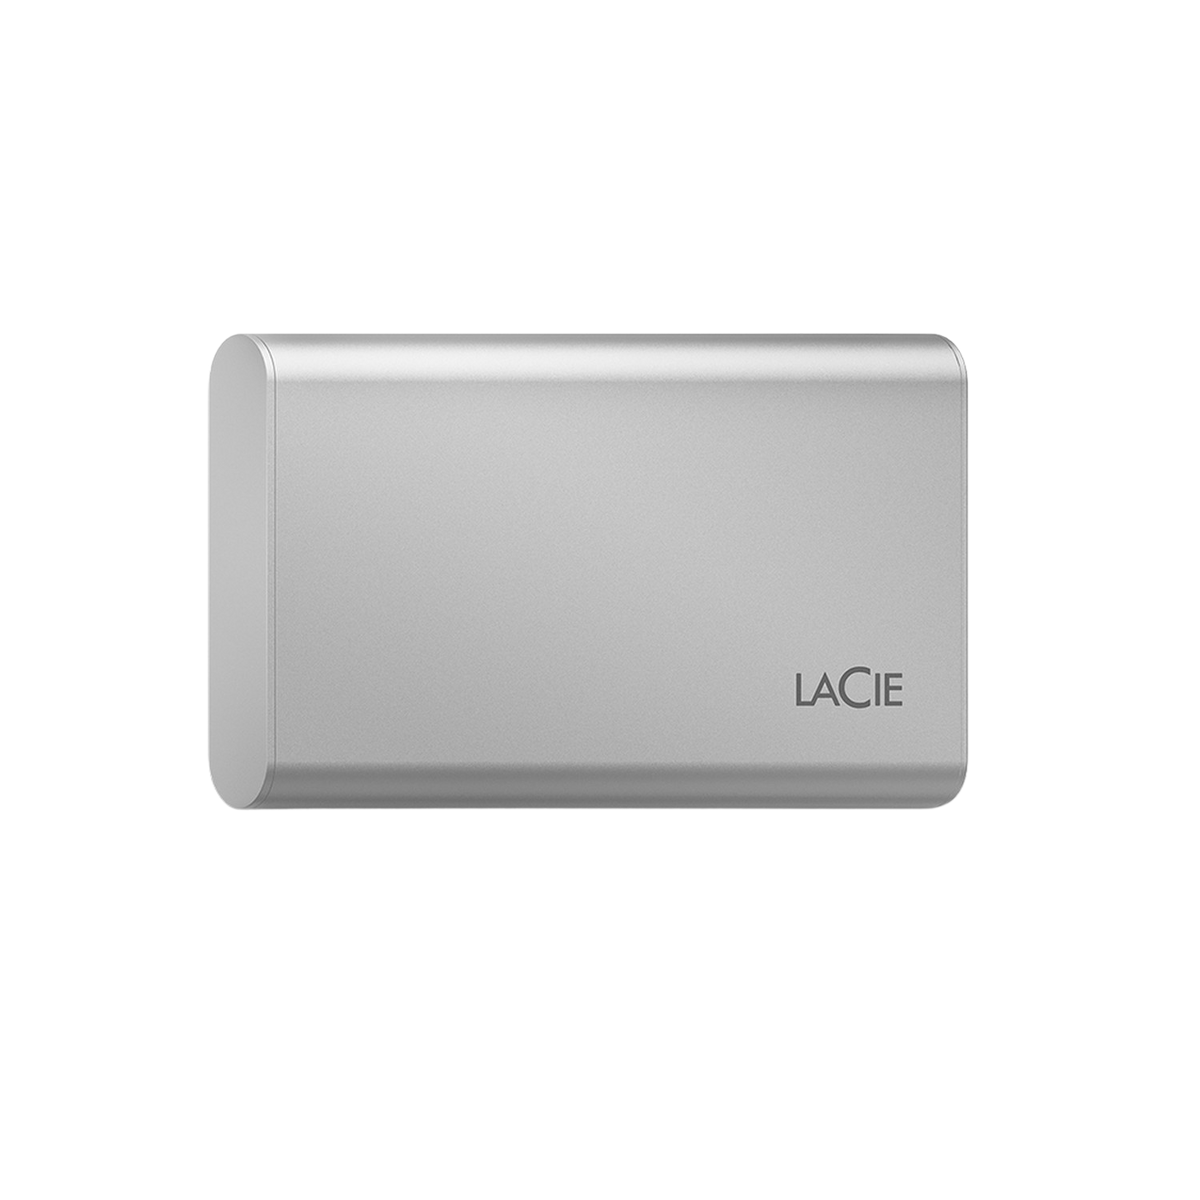 Silber STKS1000400 SSD PORTABLE SSD, LACIE 1 extern, Zoll, 2,5 500GB, TB V2